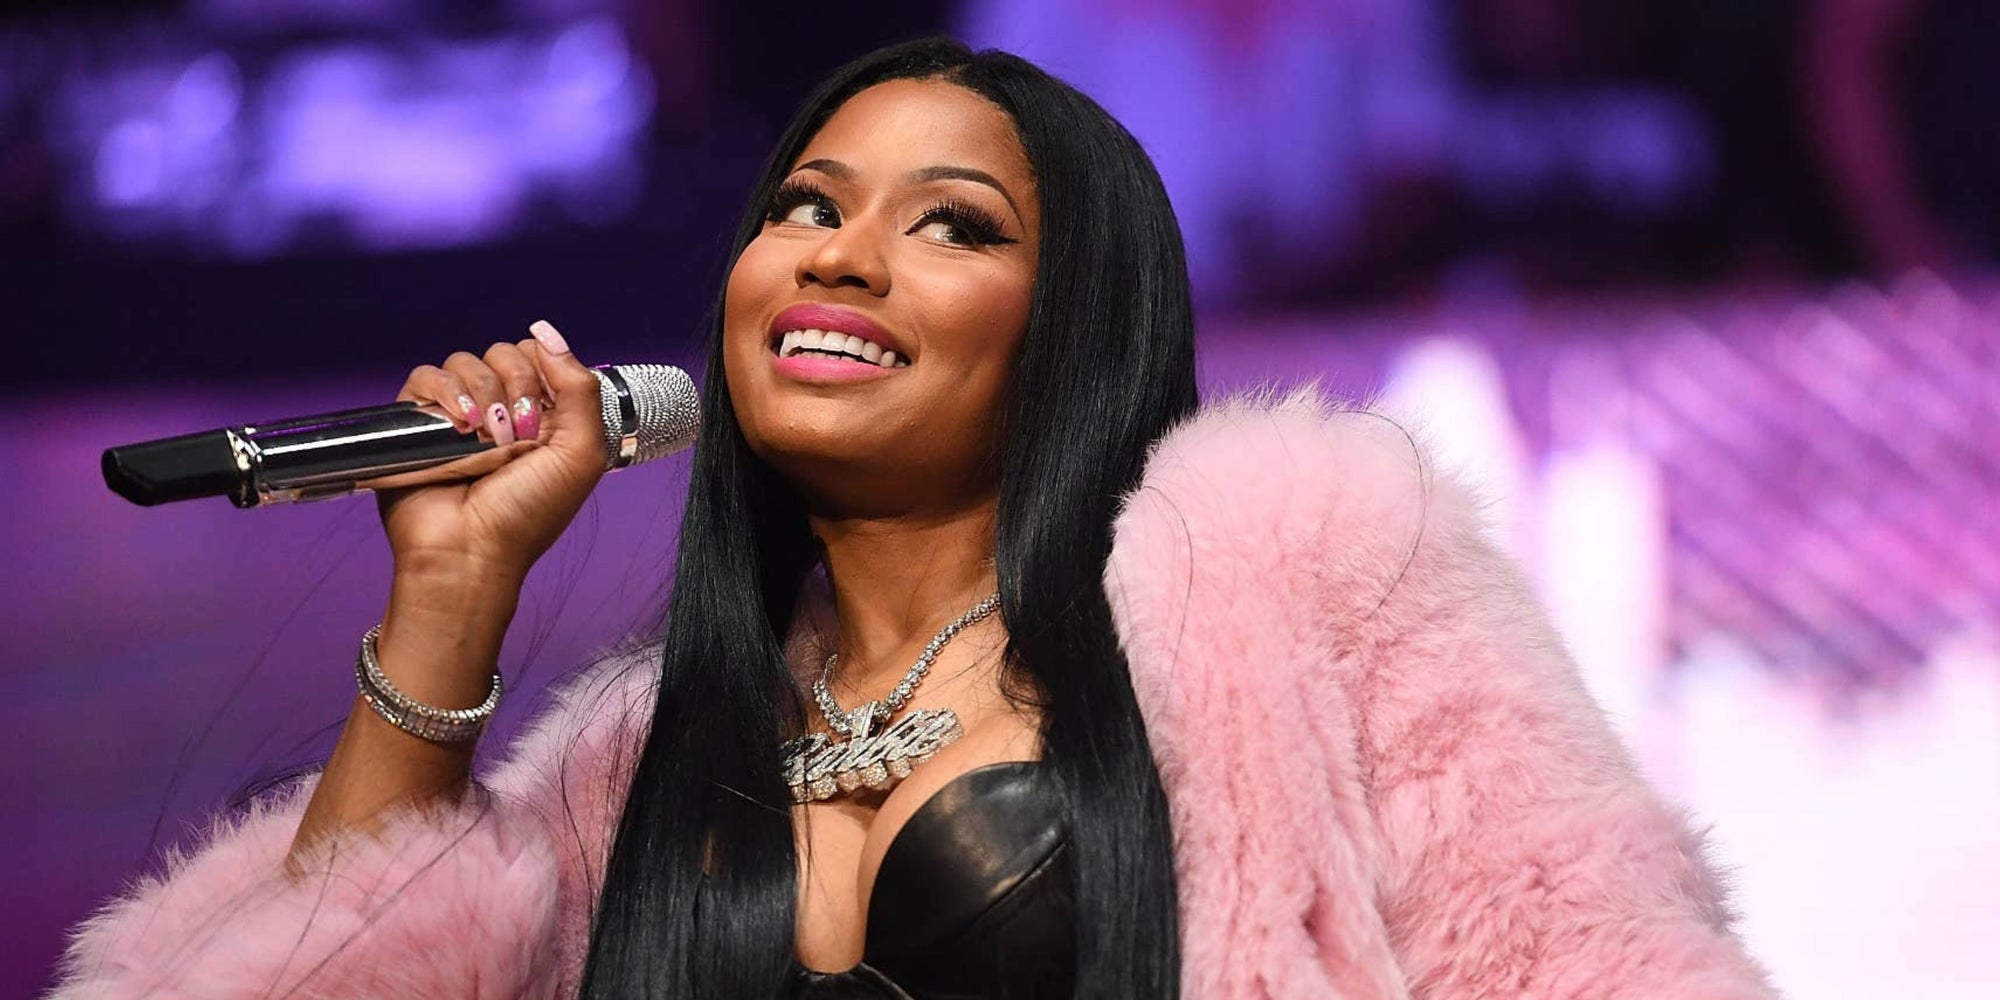 Nicki Minaj Jewelry: What Type Of Jewelry Does Nicki Minaj Wear?